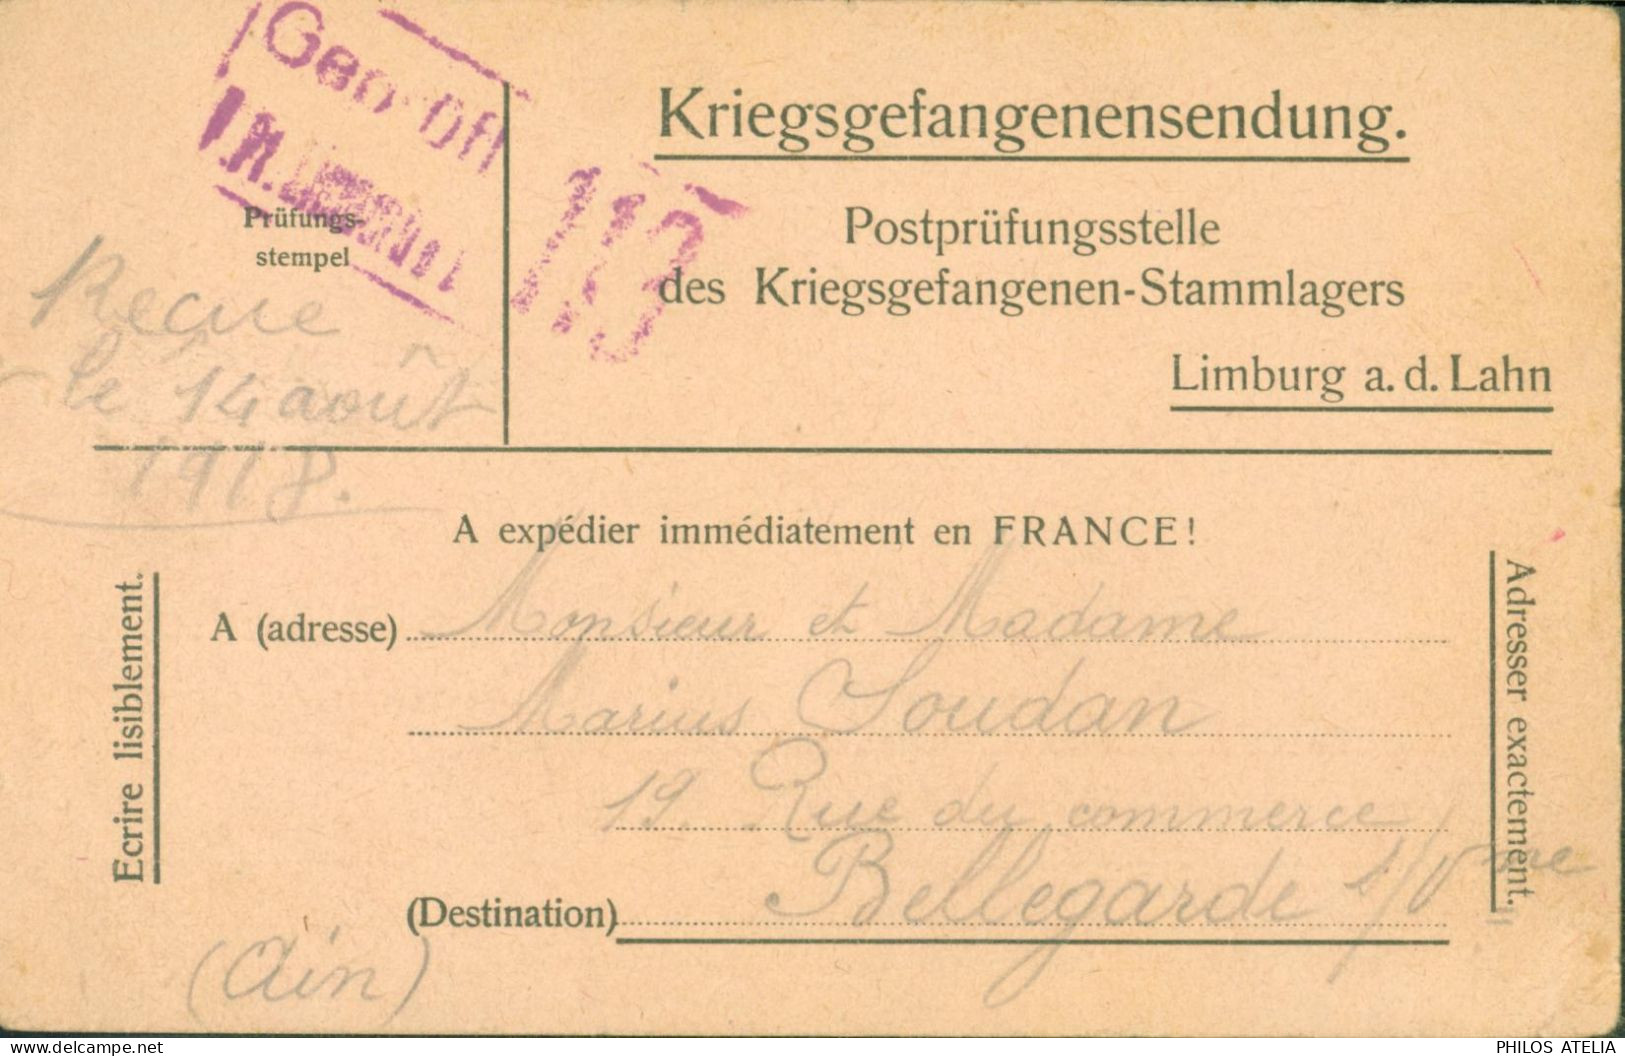 Guerre 14 Avis De Capture D'un Prisonnier De Guerre Français à Limburg A.d. Lahn Censure Camp 29 6 18 FM Franchise - WW I